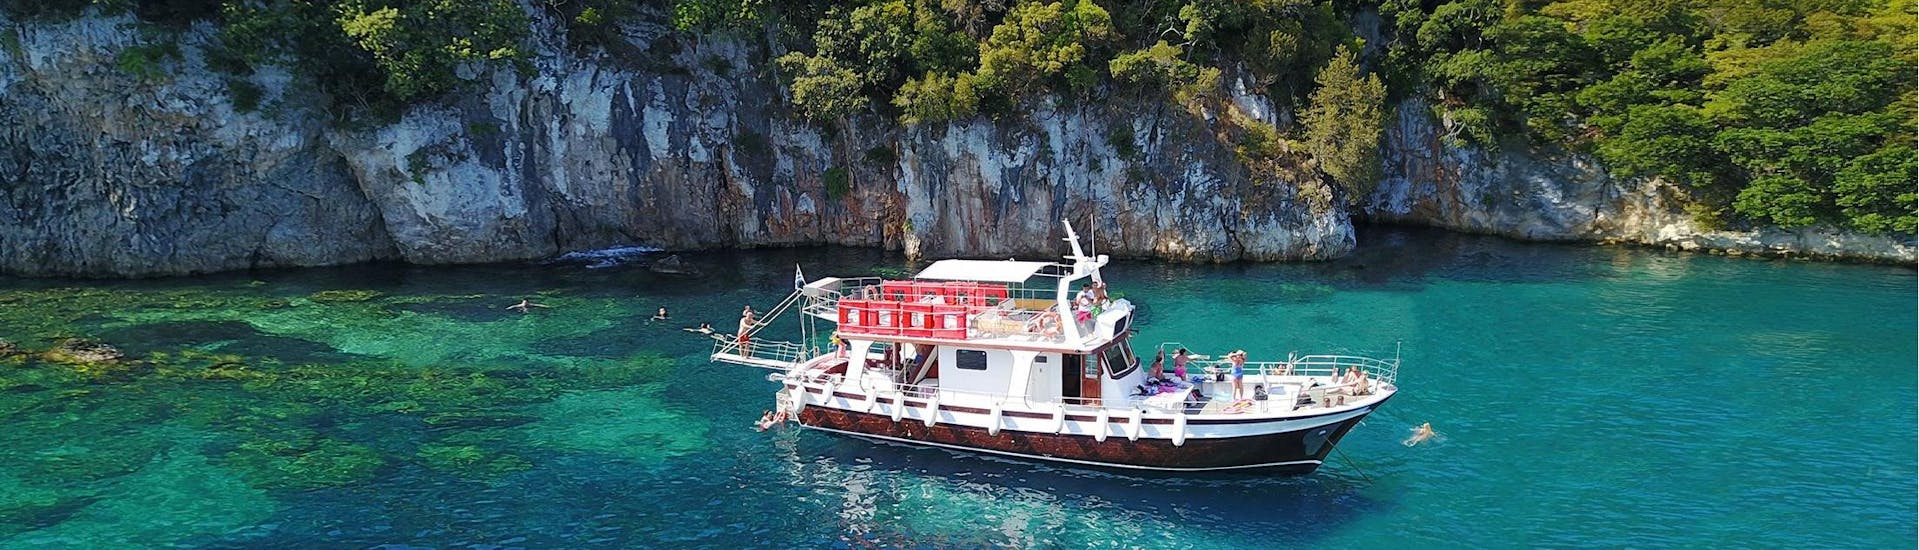 Le bateau moderne en bois utilisé pour les balades en bateau de Zephyros Milos est situé dans une baie aux eaux cristallines à Milos.